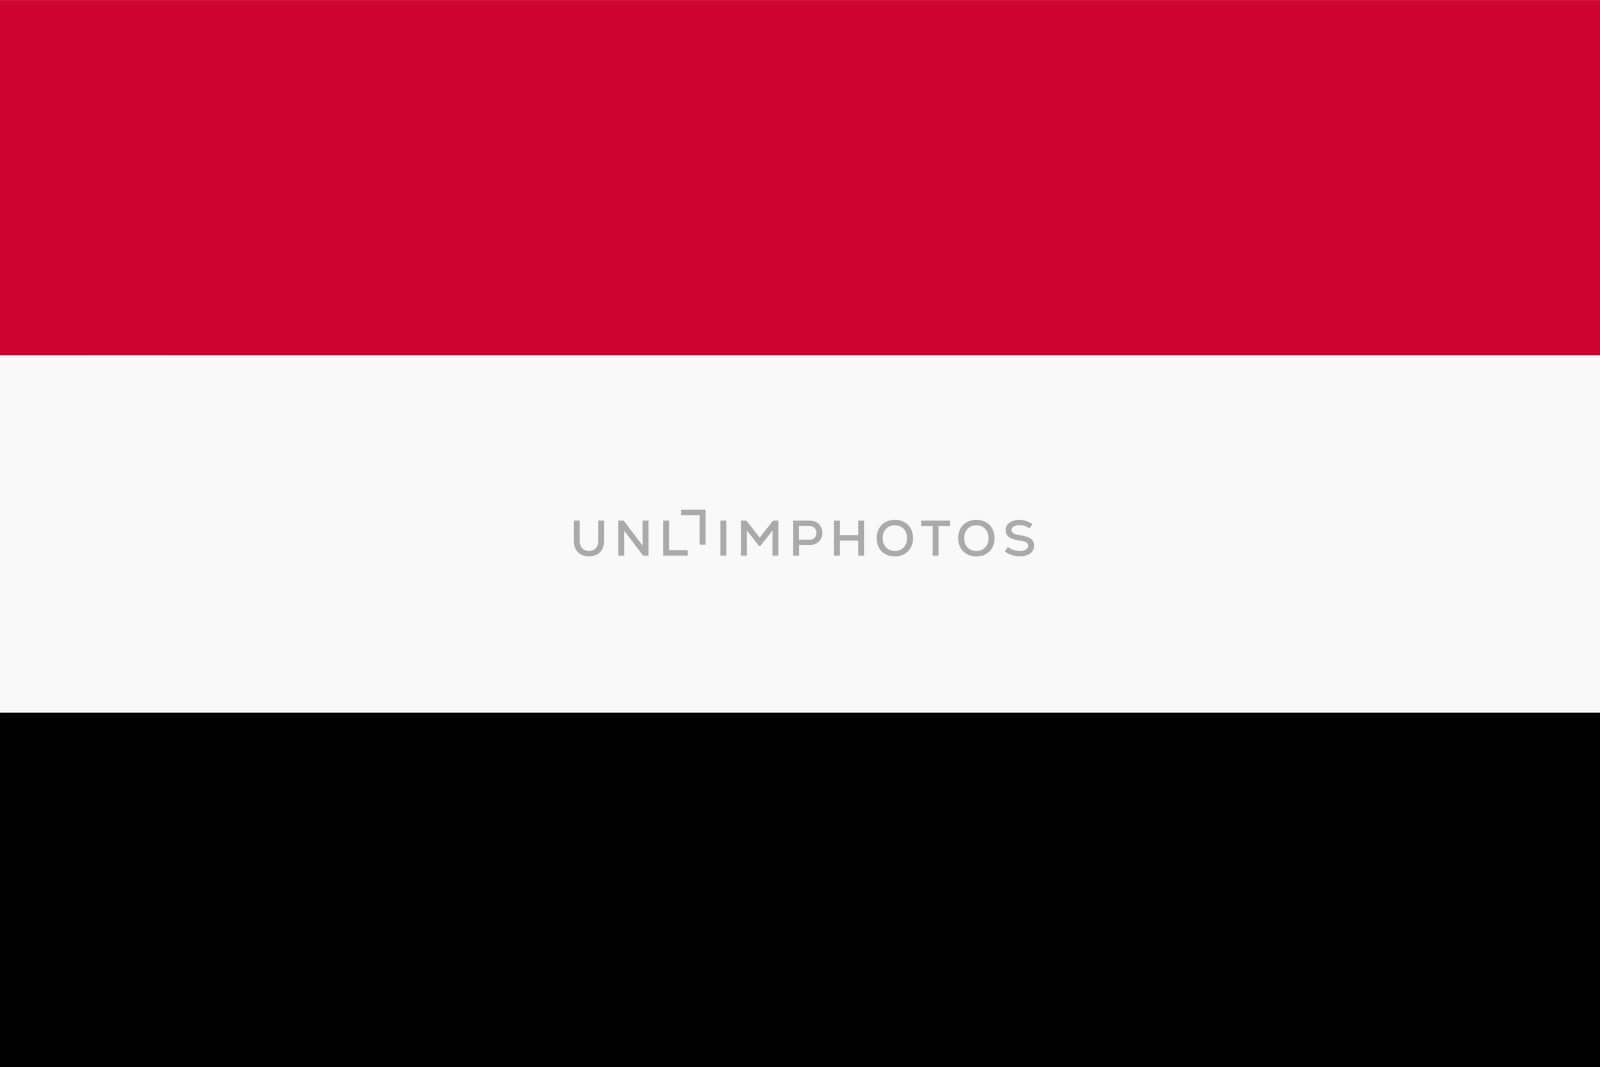 A flag of Yemen background illustration large file